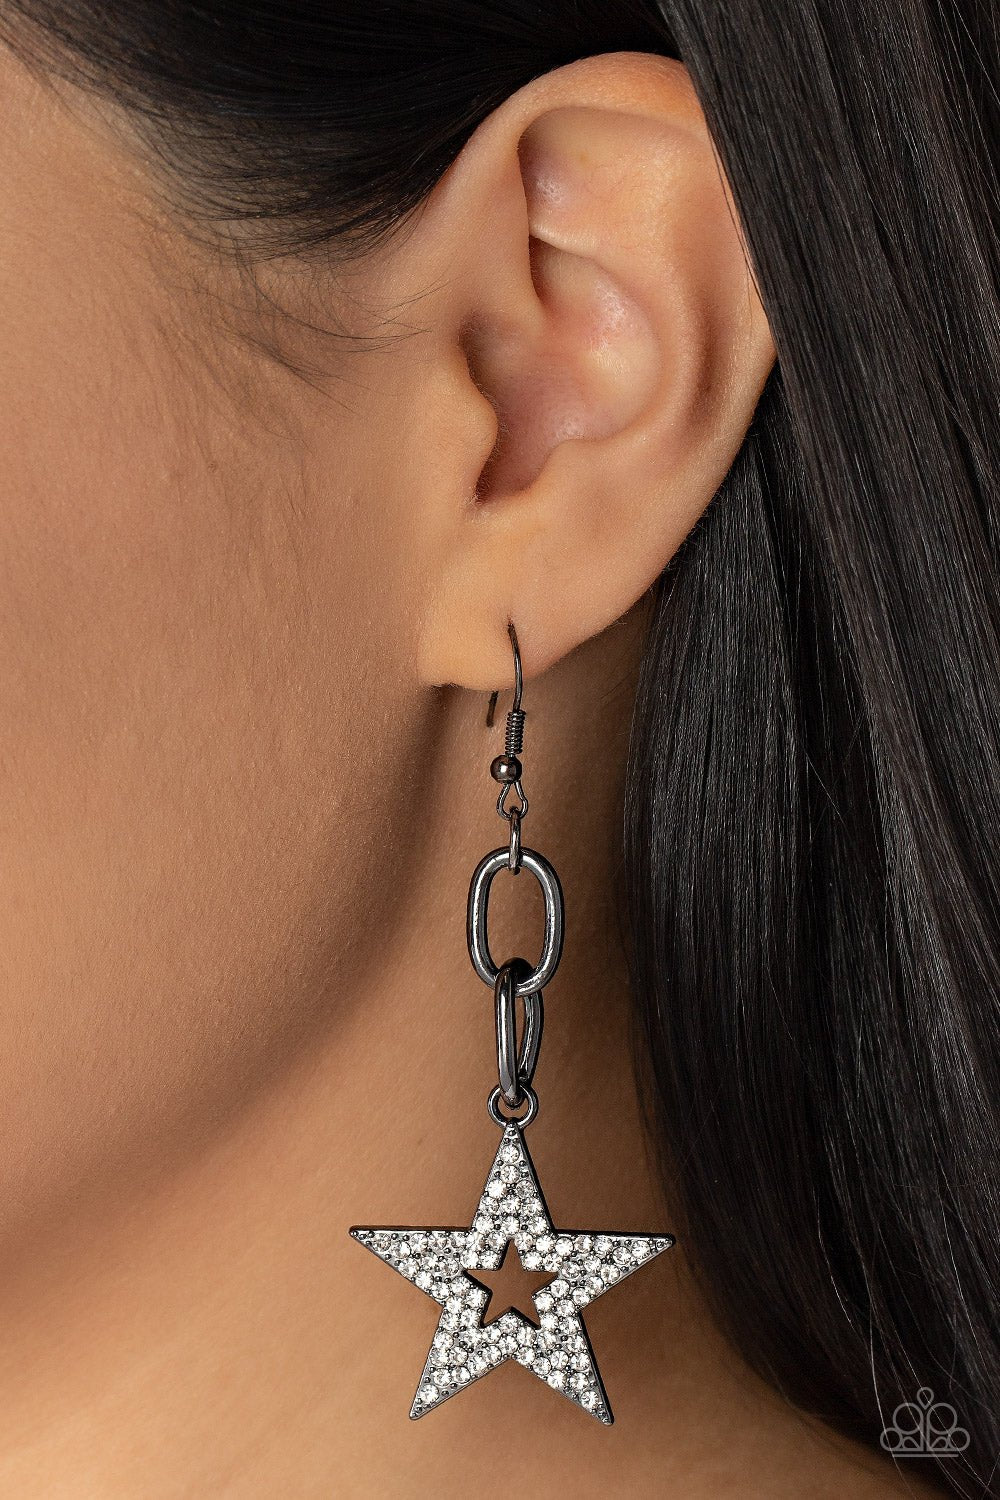 Cosmic Celebrity Black Earrings - Jewelry by Bretta - Jewelry by Bretta